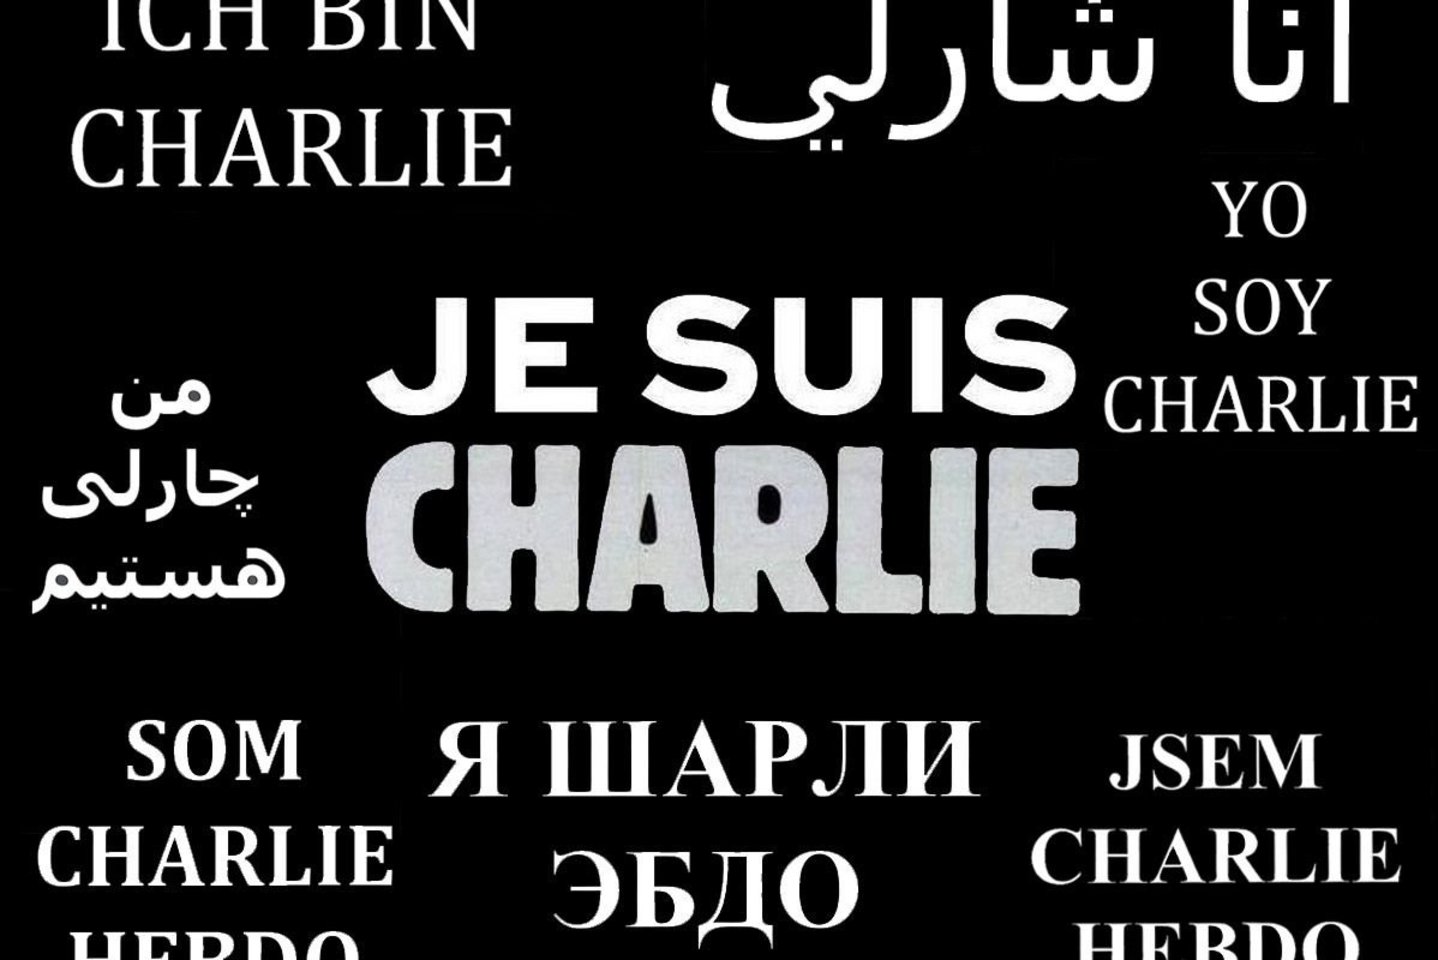 2015 m. Paryžiuje trys kaukėti užpuolikai įsiveržė į satyrinio savaitraščio „Charlie Hebdo“ redakciją ir nušovė 12 žmonių, dar 11 asmenų sužeidė. Teroro aktą įvykdė islamo teroristai, keršydami už savaitraštyje išspausdintą pranašo Mahometo karikatūrą.